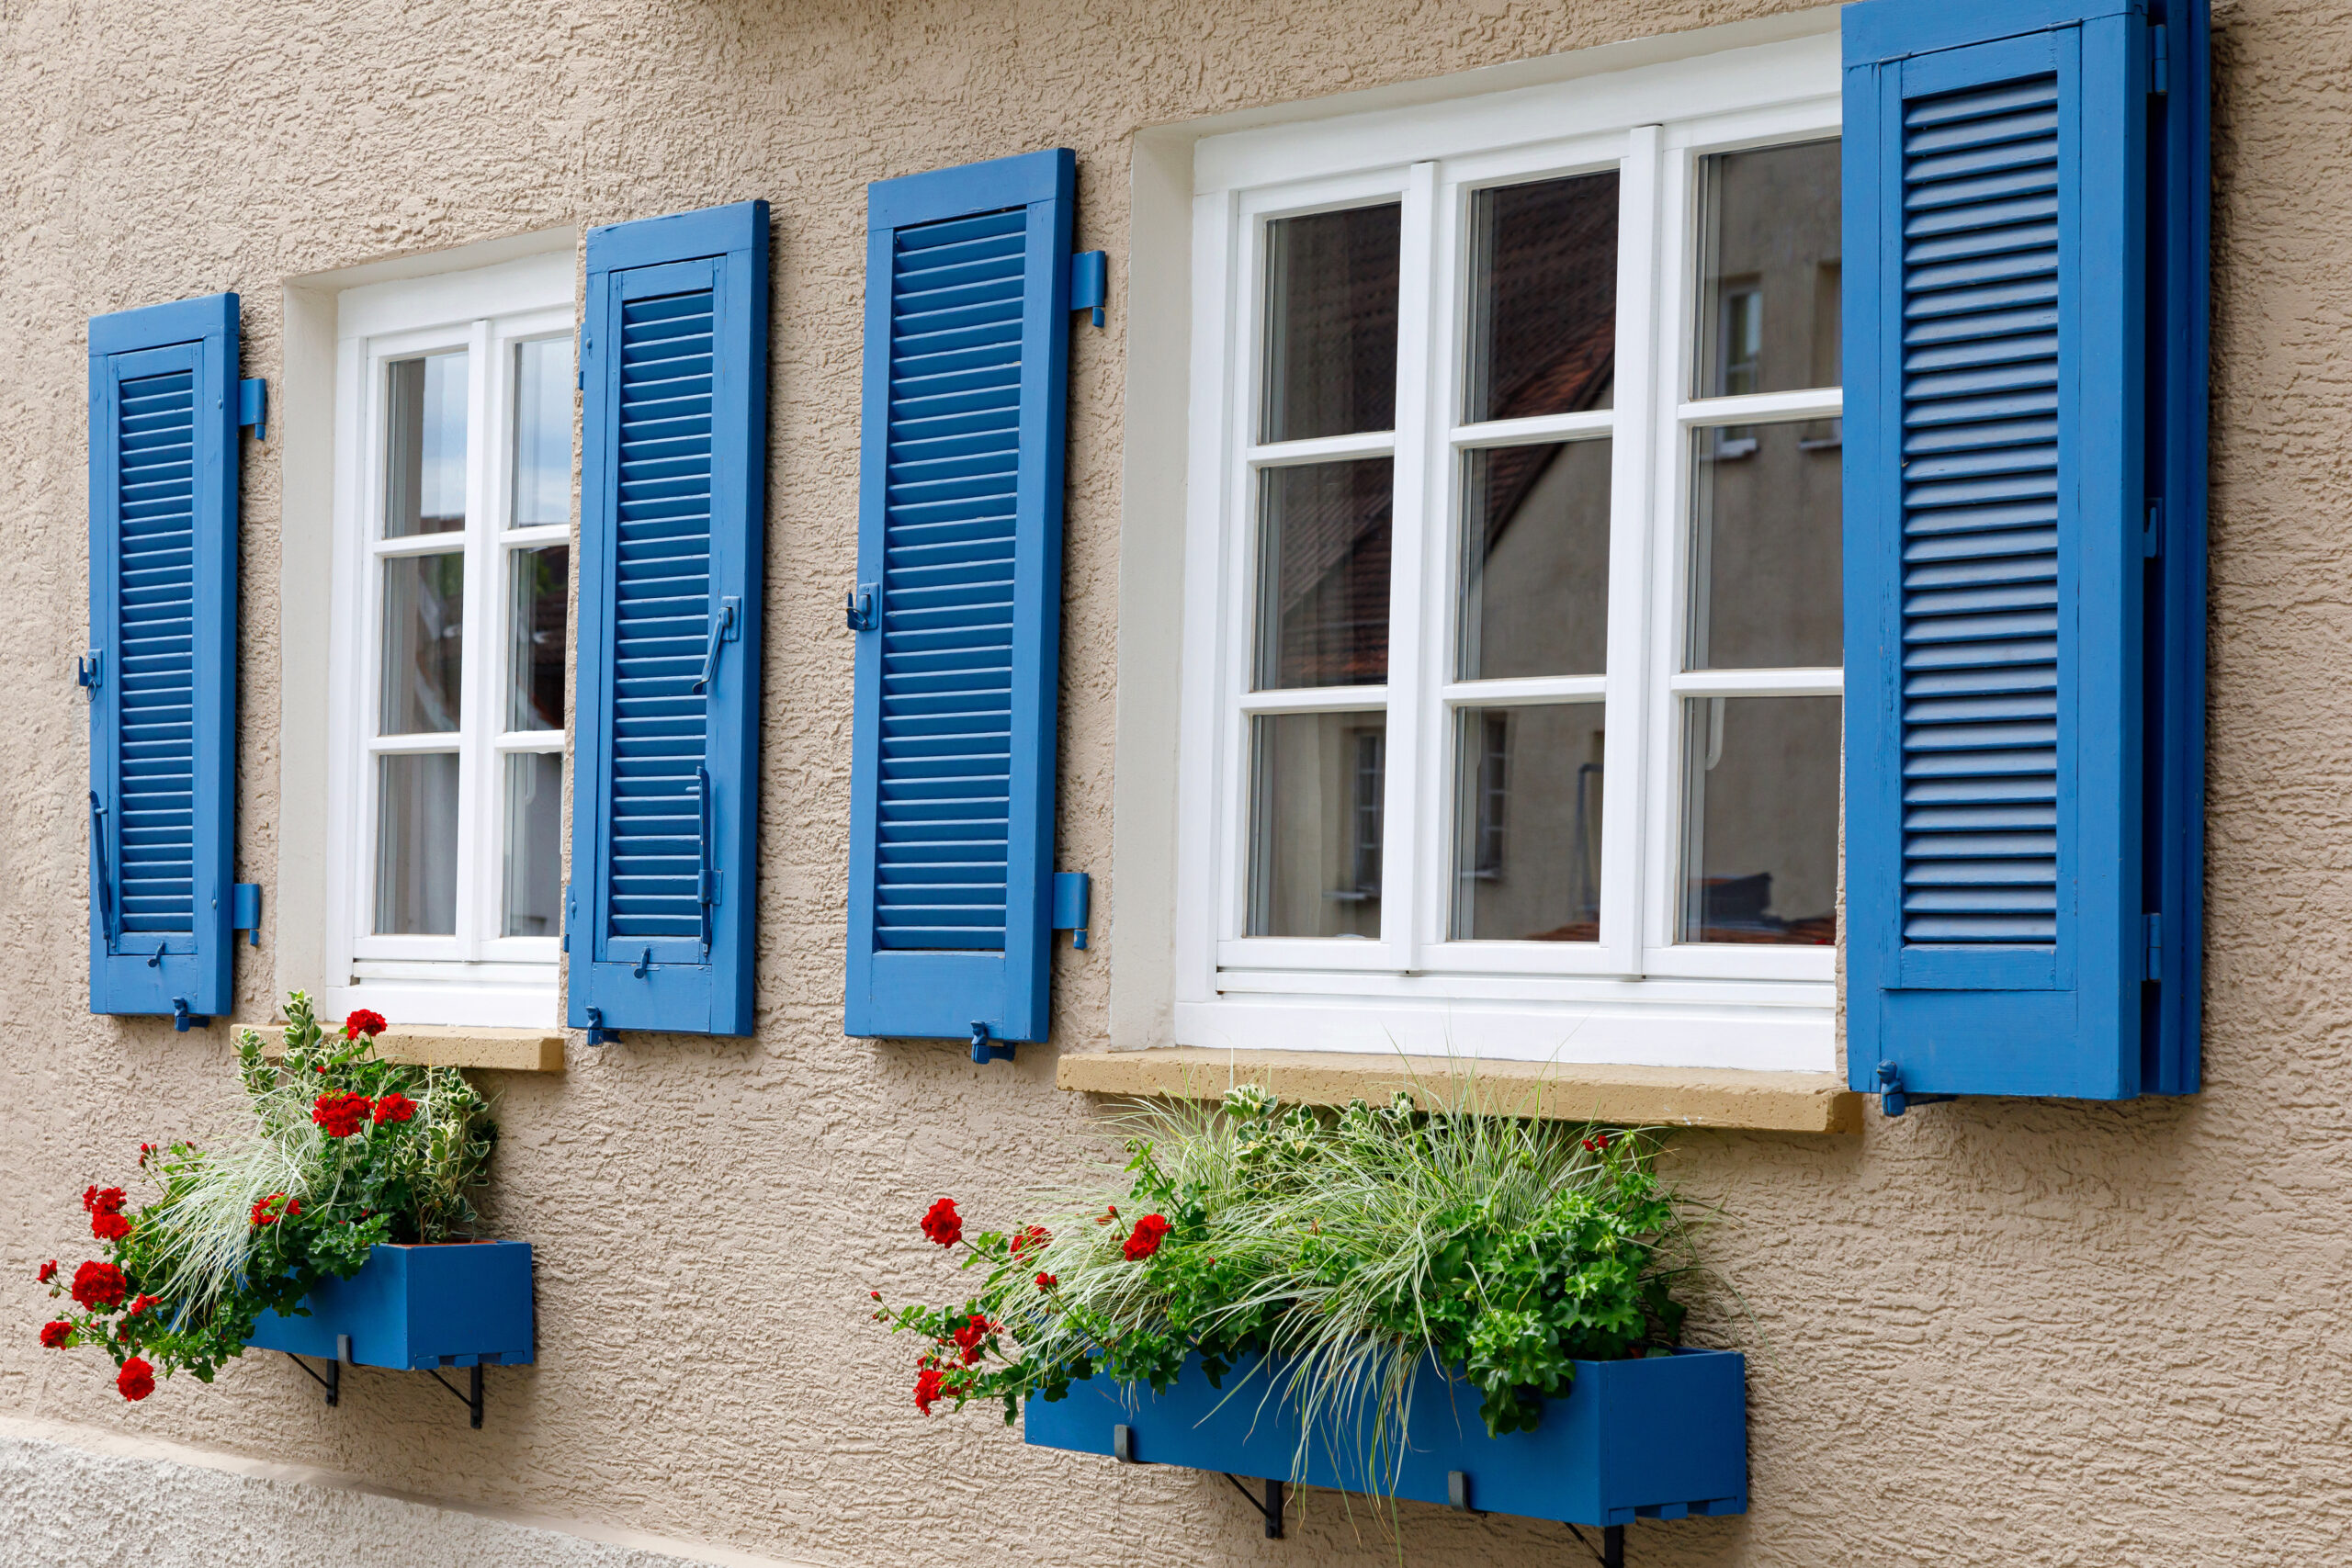 Kastenfenster mit blauen Fensterläden.